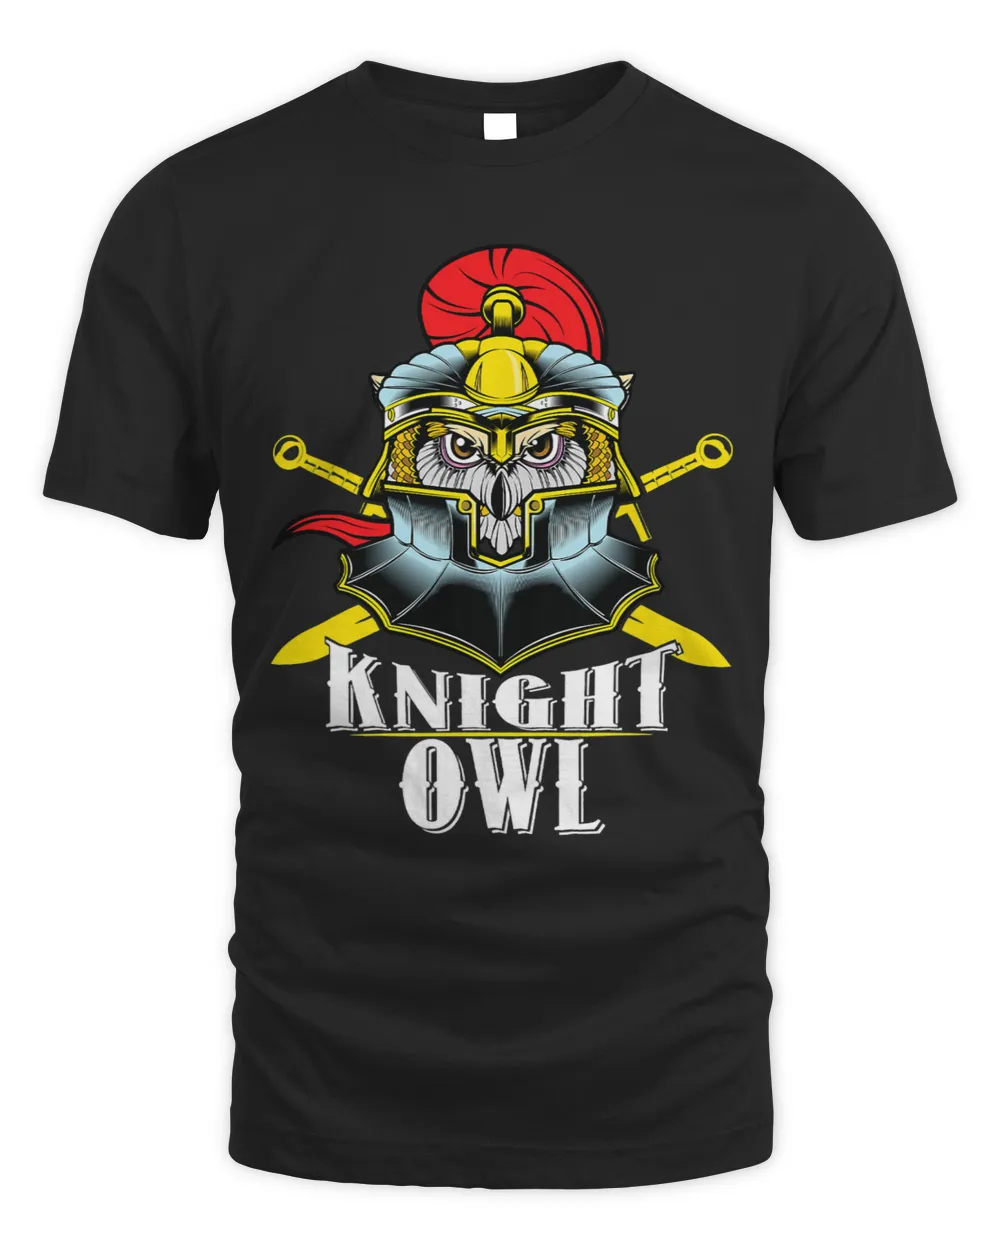 Knight Owl Night Owls Insomniac Medieval Knights